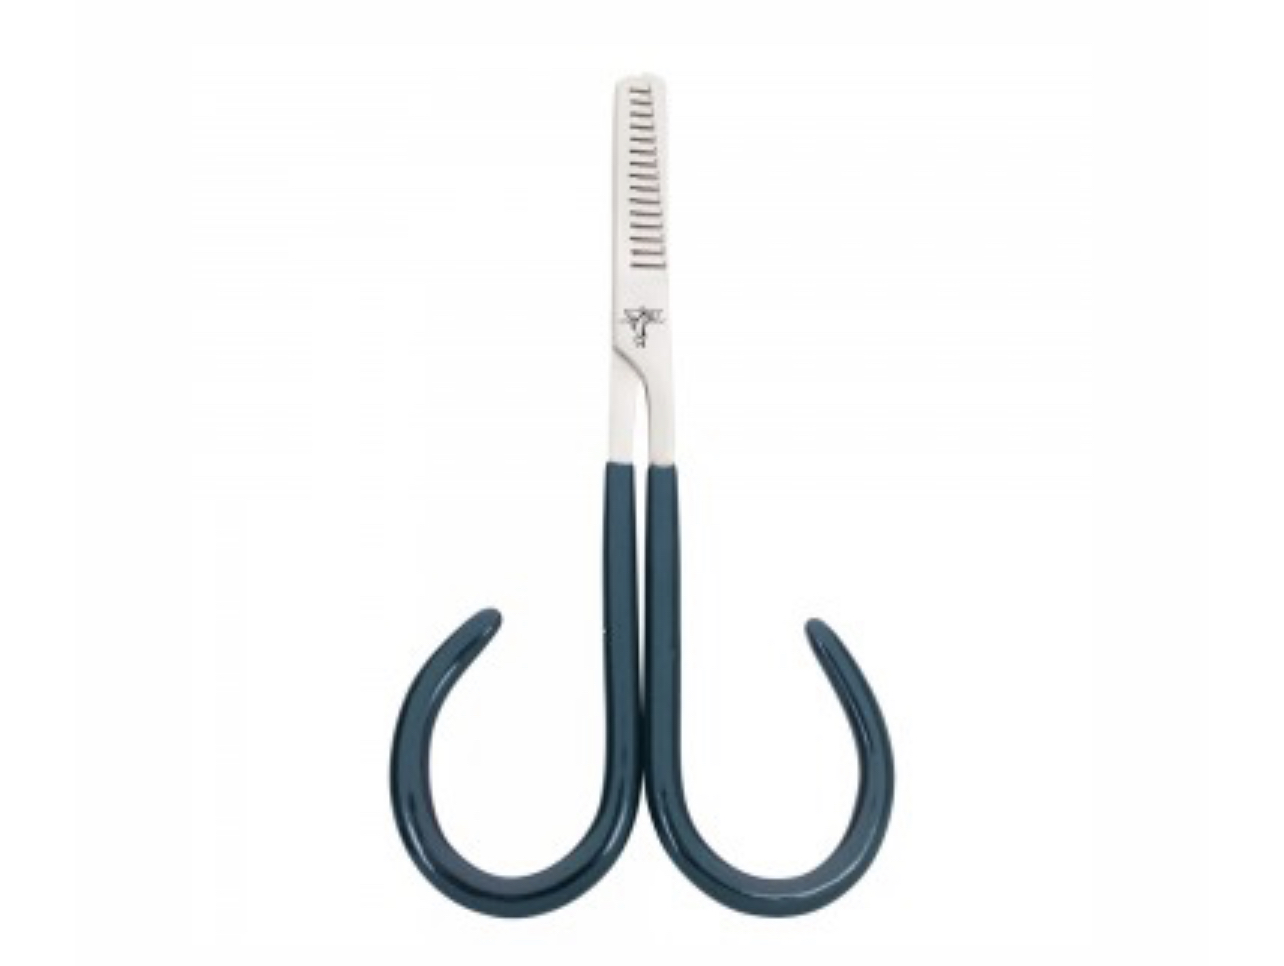 Dr. Slick Open Loop Thinning Scissors - 4